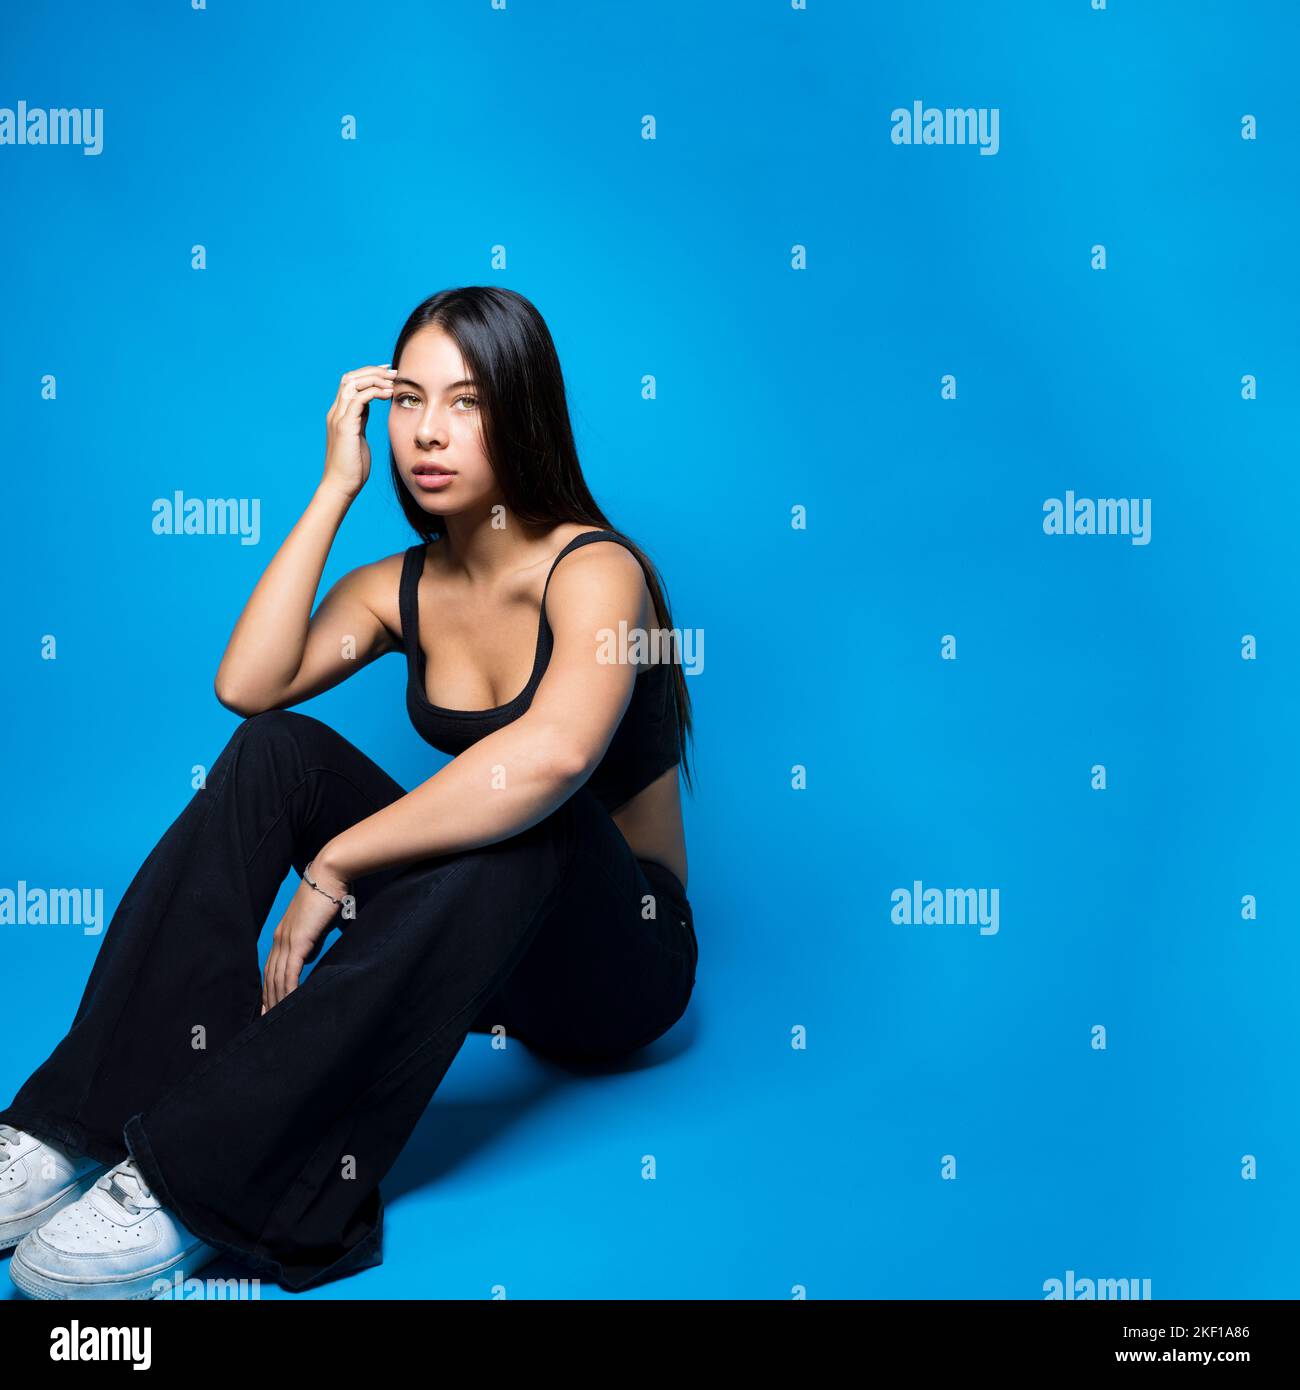 Adolescente multirracial sentado en el piso con las rodillas dobladas rodeado de fondo azul con espacio de copia Foto de stock